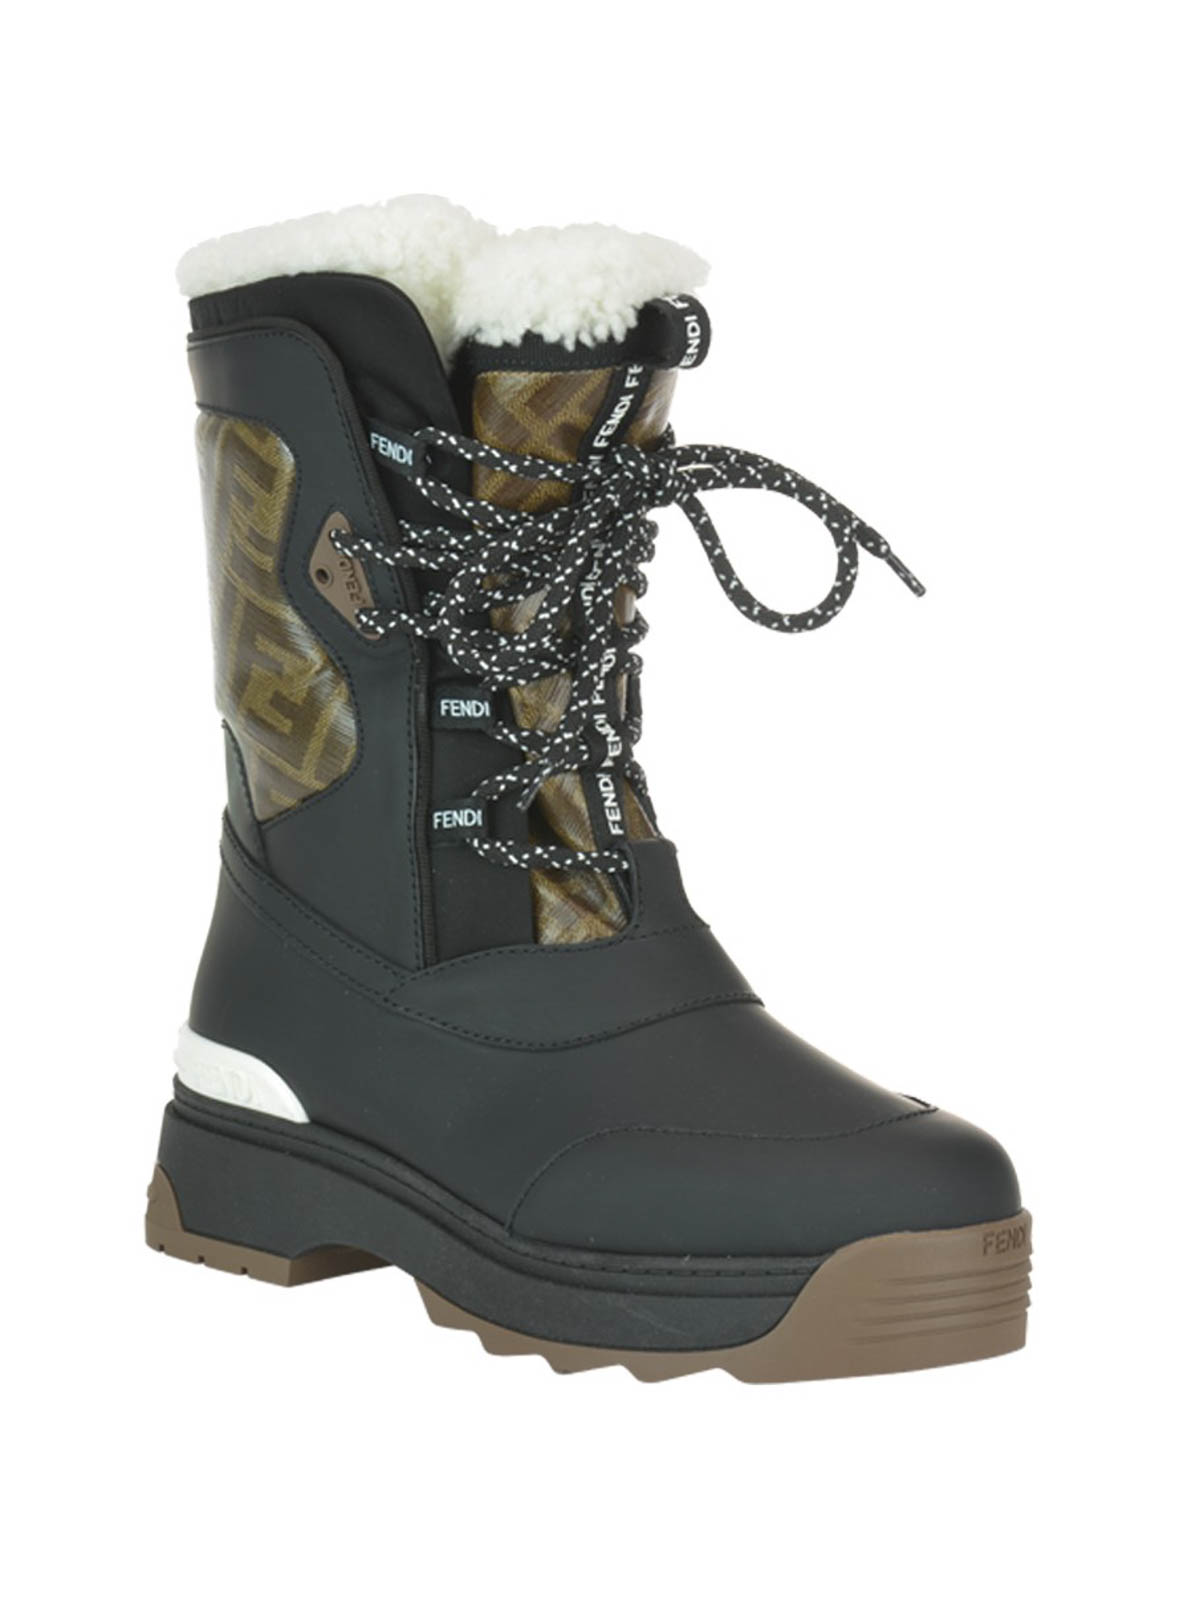 Sinis Prestatie Cirkel Snow boots Fendi - FF glazed fabric snow boots - 8U6964A8C66ZF | iKRIX.com